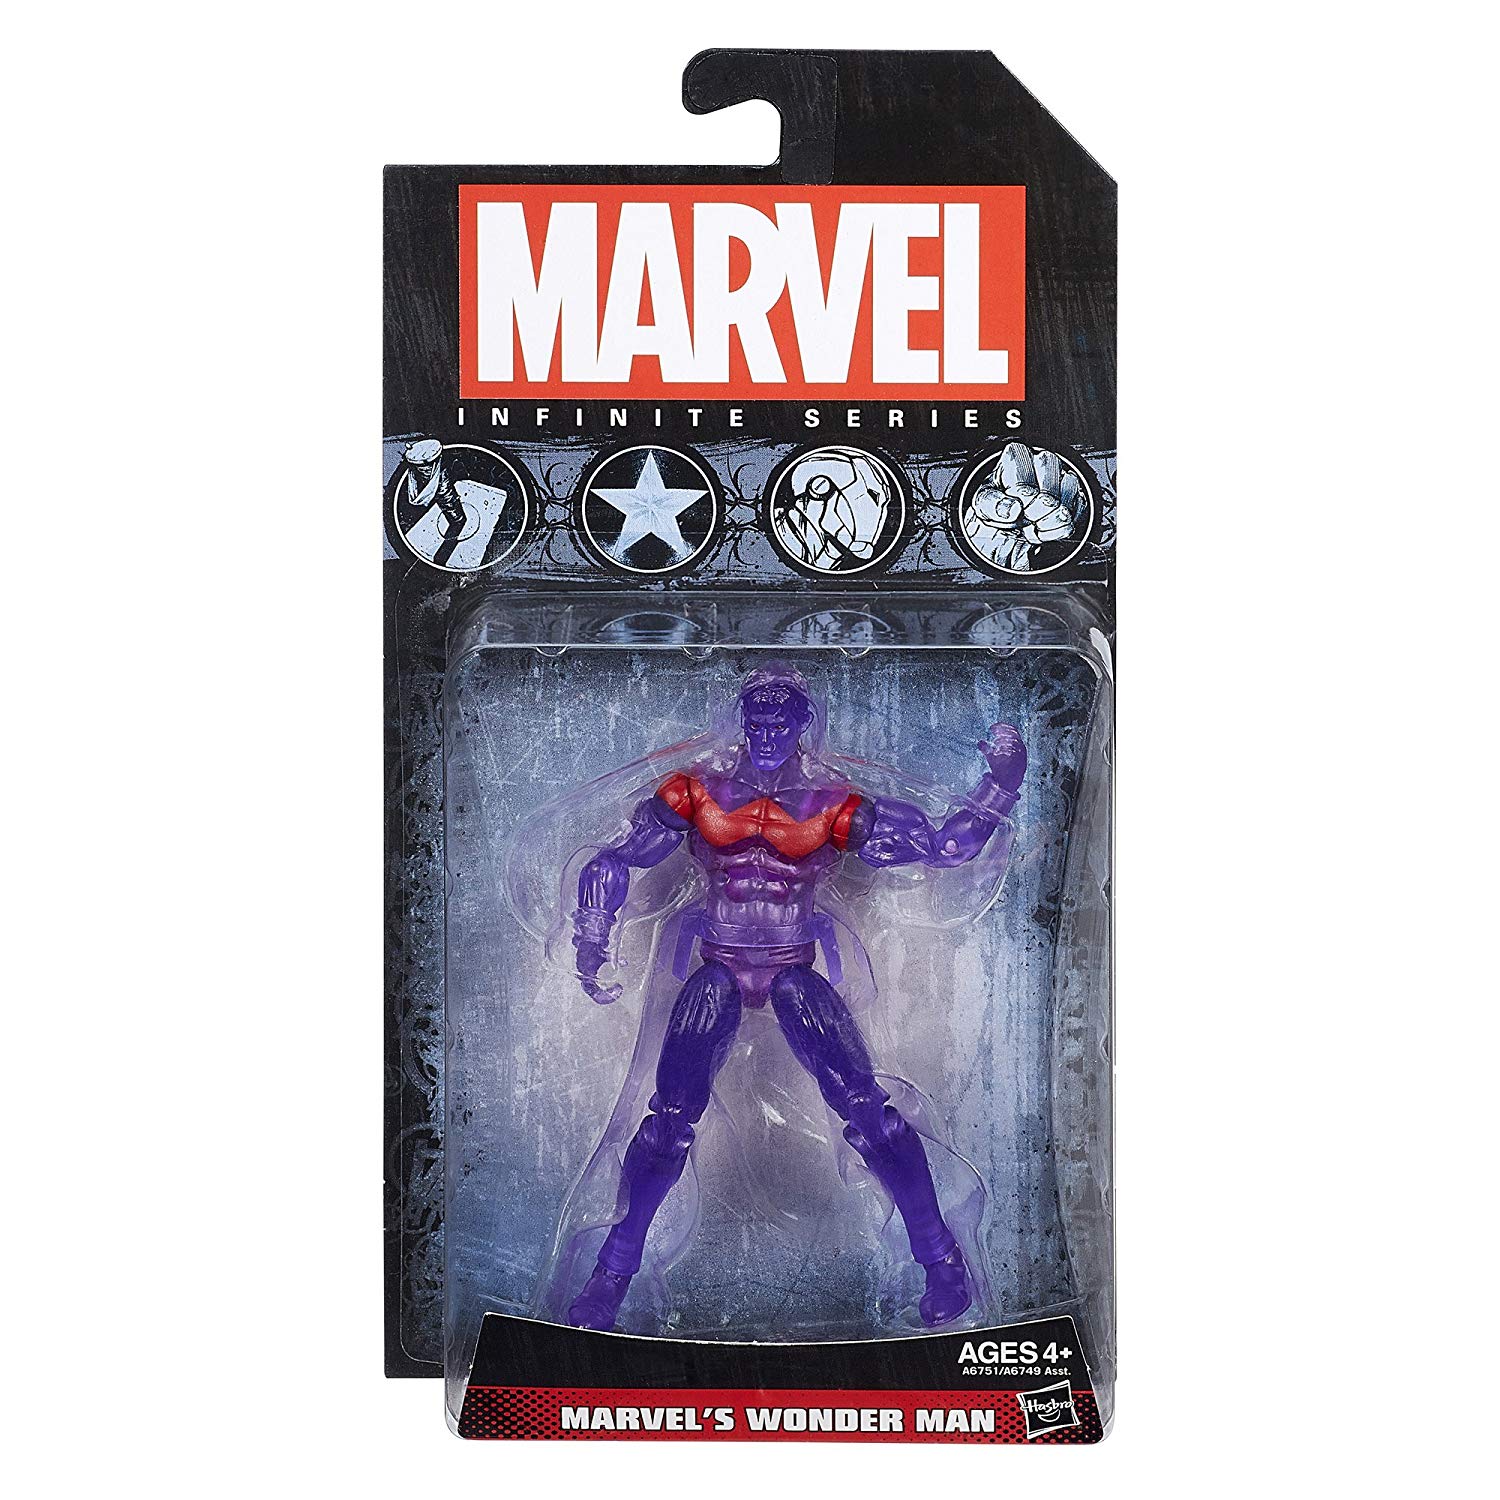 Marvel Infinite Series Wonderman 3.75 inch Action Figure 1